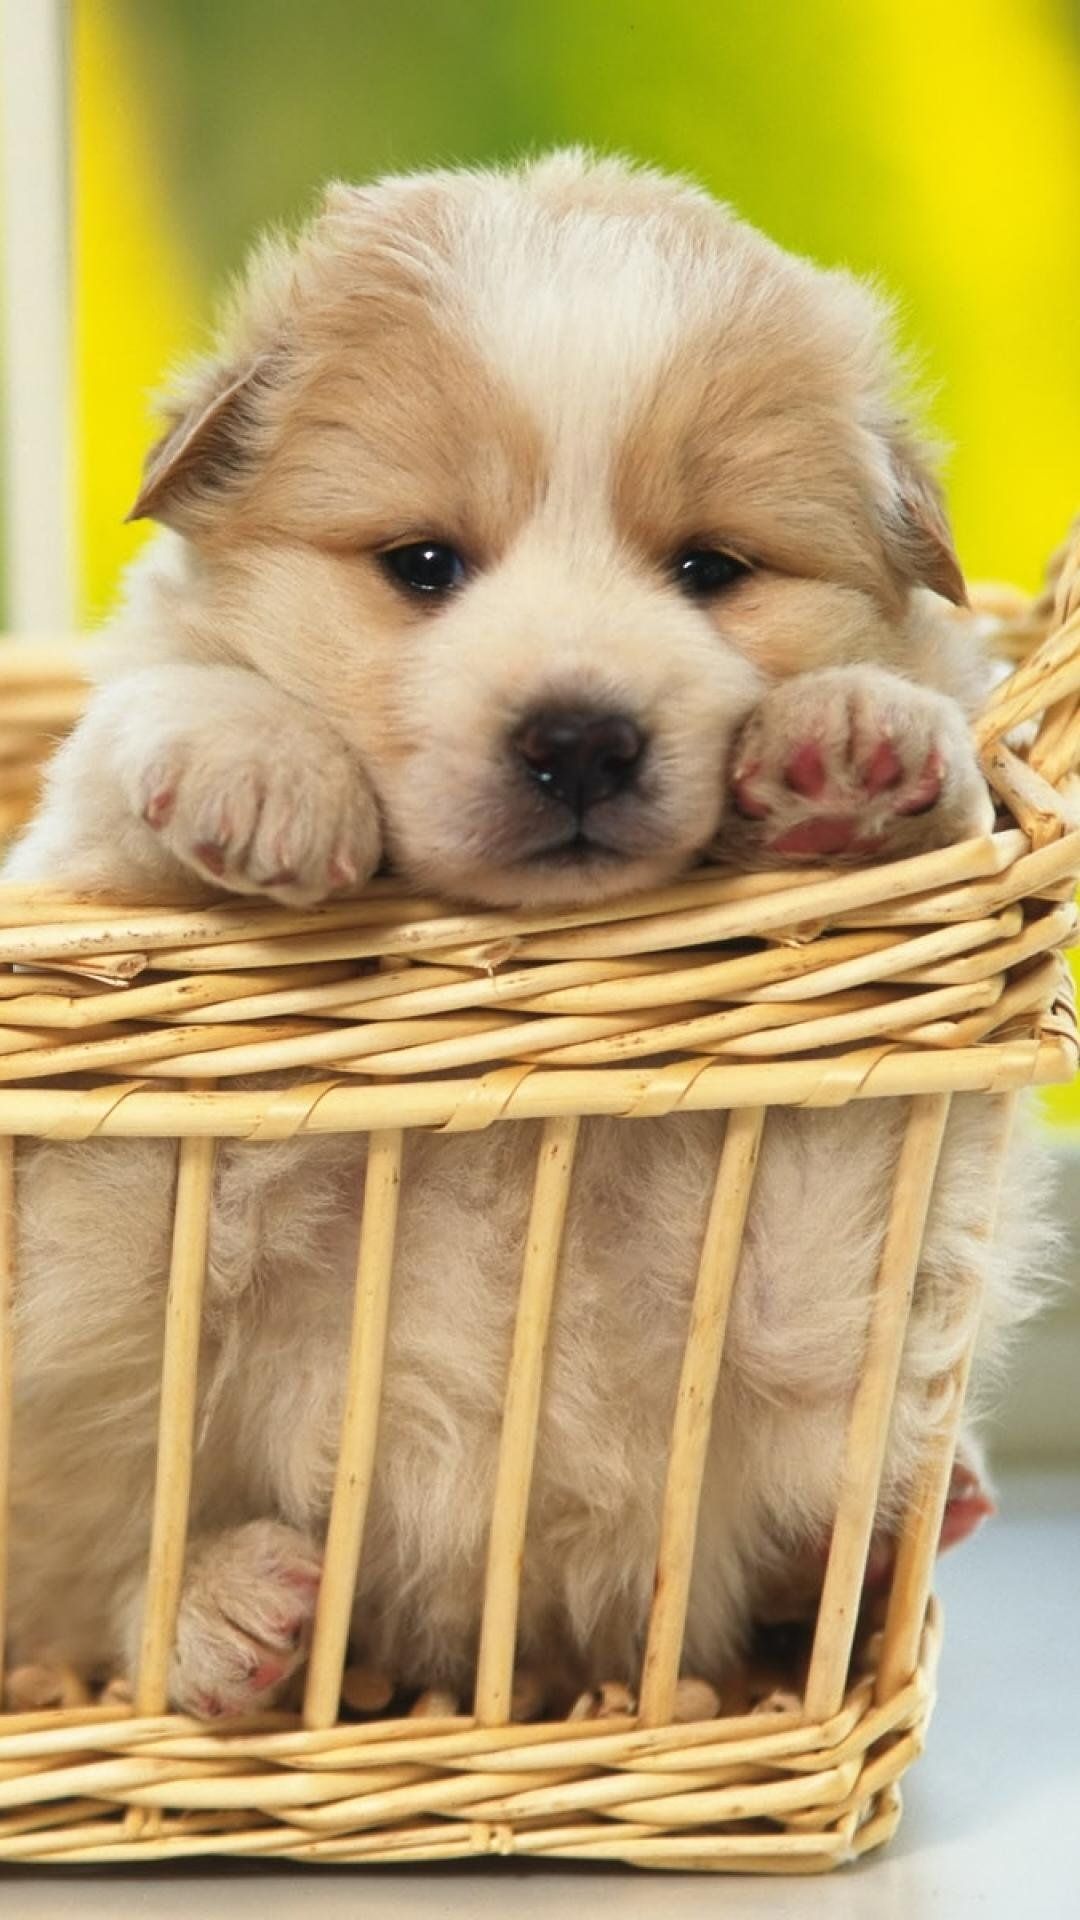 A puppy in a basket - Puppy